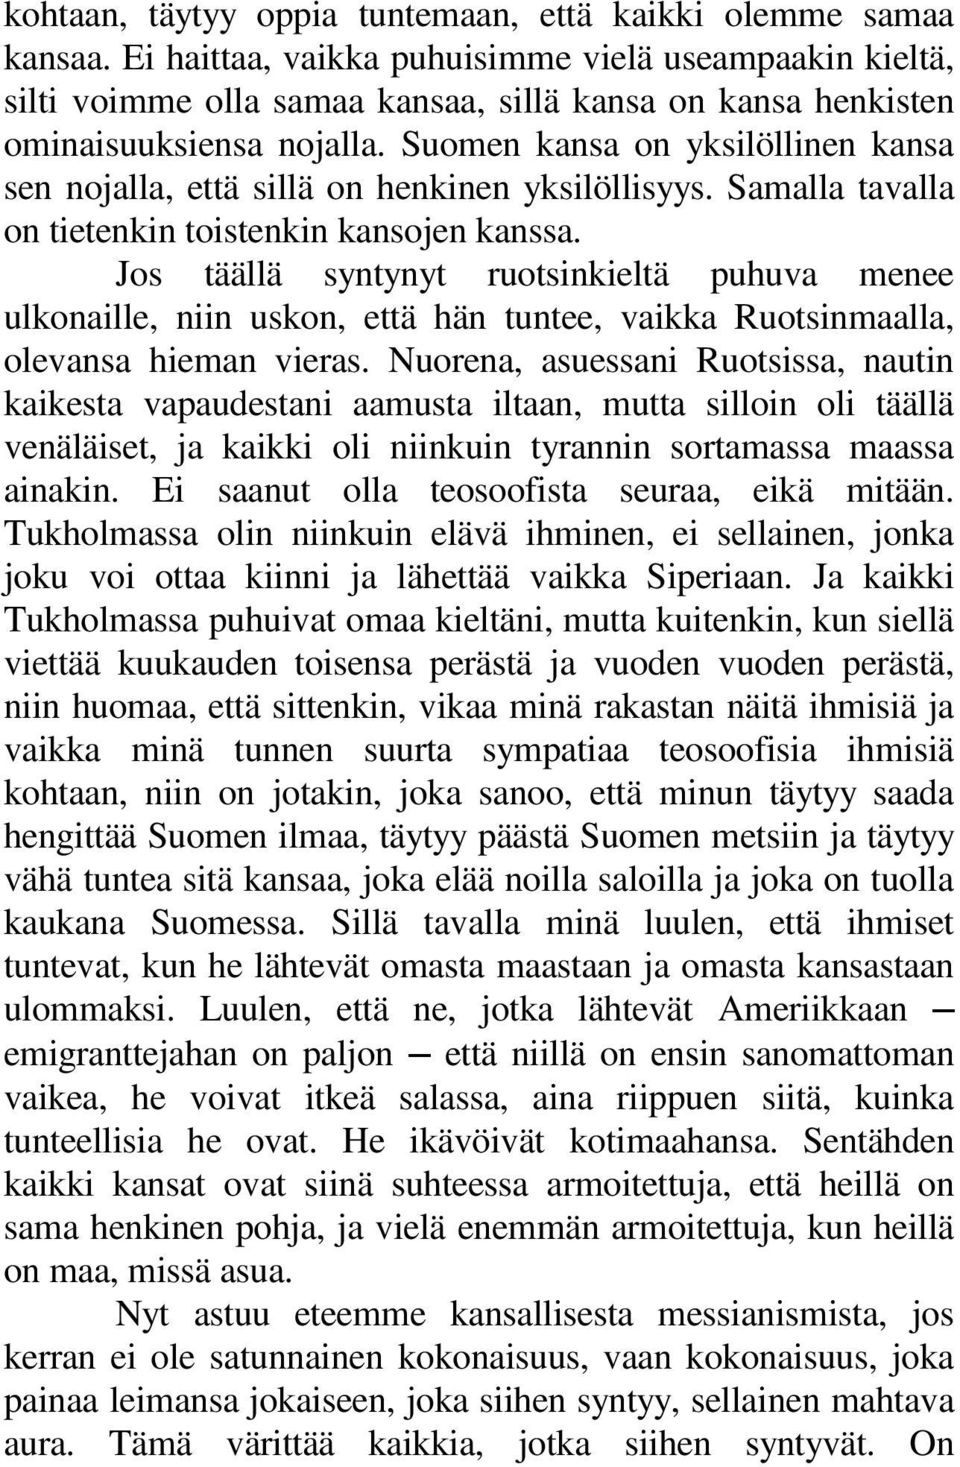 Suomen kansa on yksilöllinen kansa sen nojalla, että sillä on henkinen yksilöllisyys. Samalla tavalla on tietenkin toistenkin kansojen kanssa.